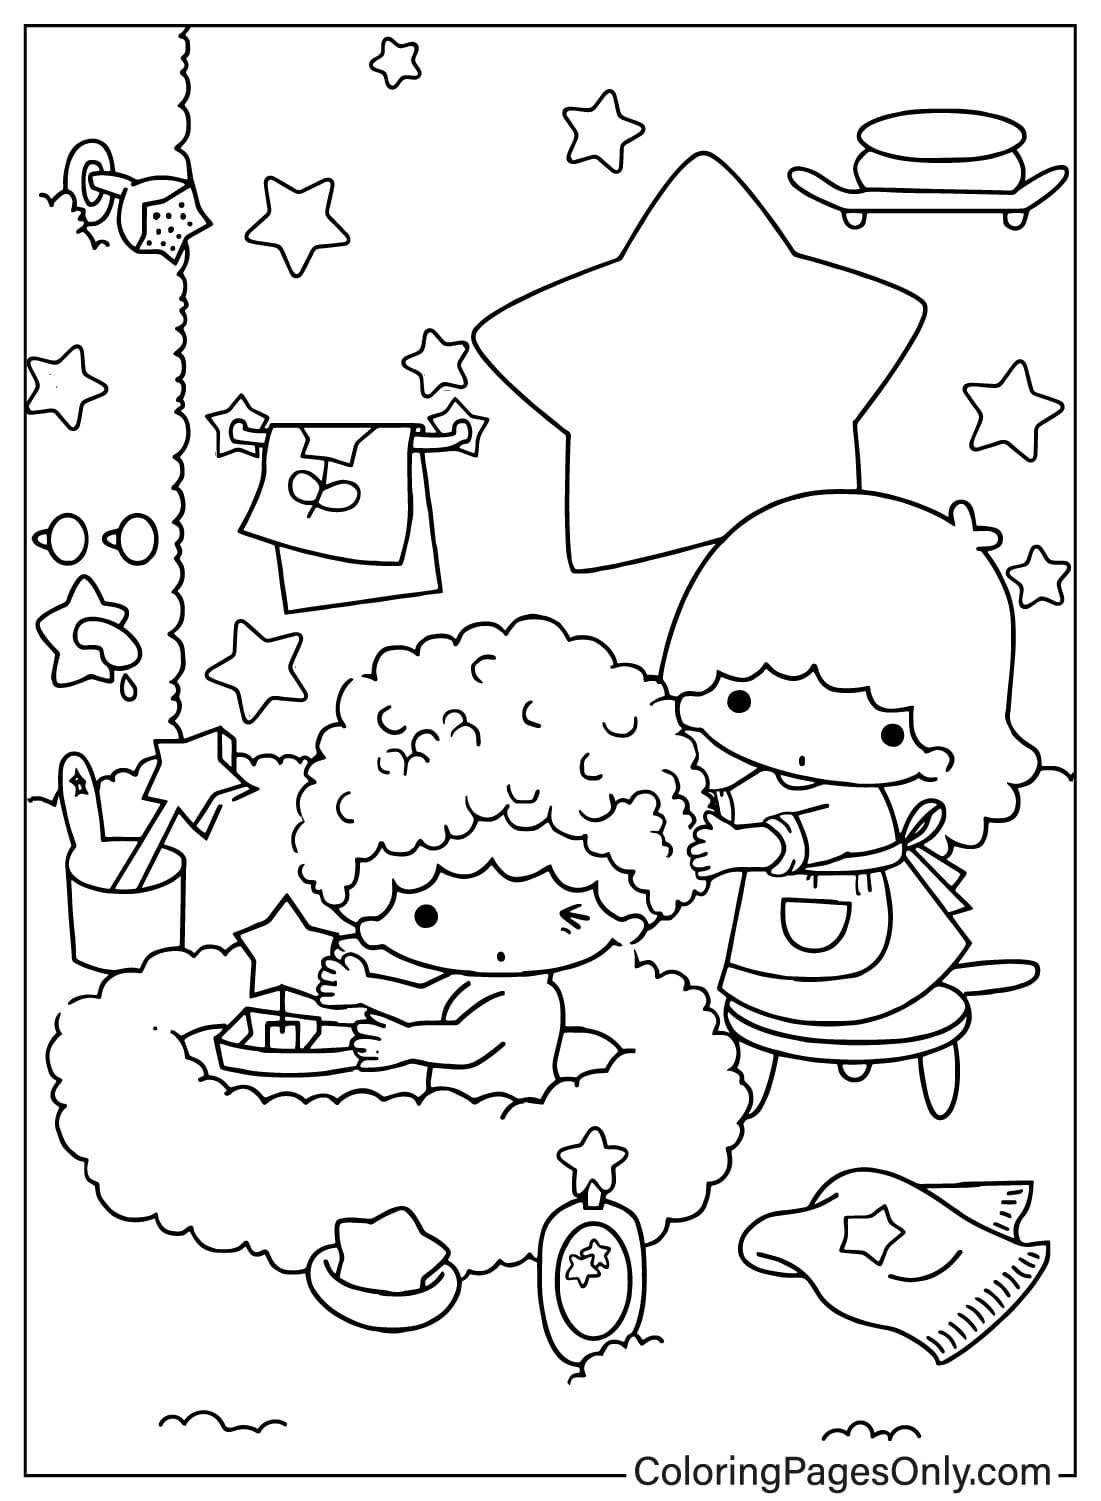 Simpatica pagina da colorare di Lala e Kiki di Little Twin Stars